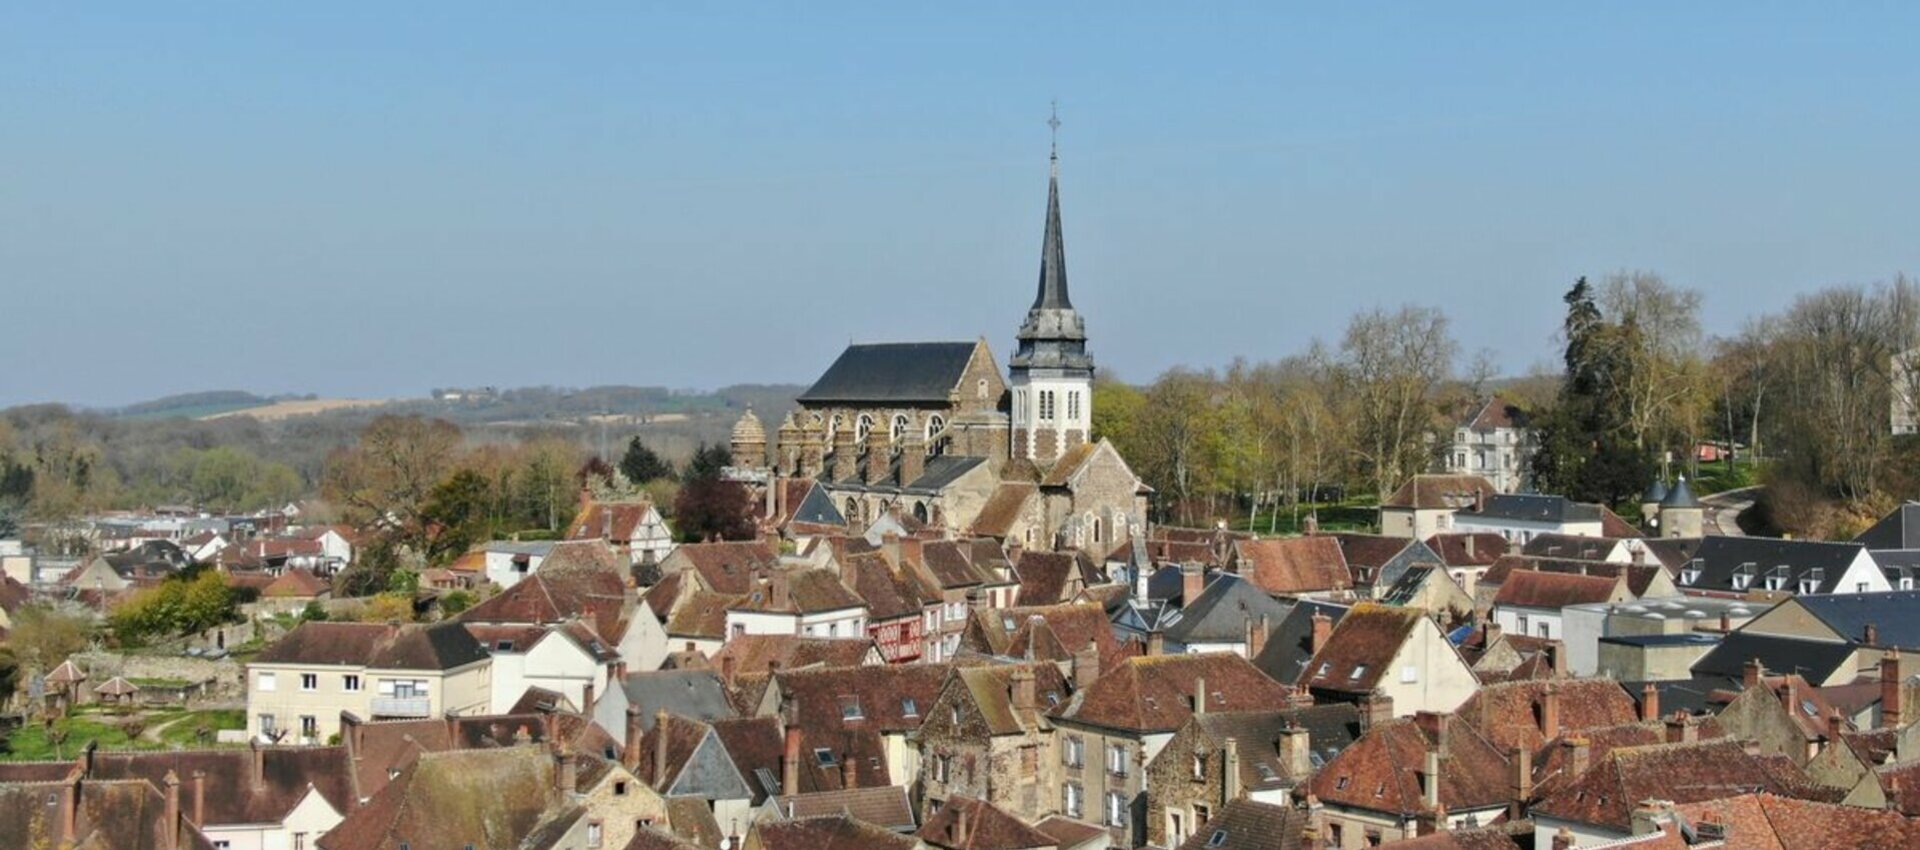 Bienvenue sur le site officiel de la Ville de Toucy située dans l'Yonne (89)